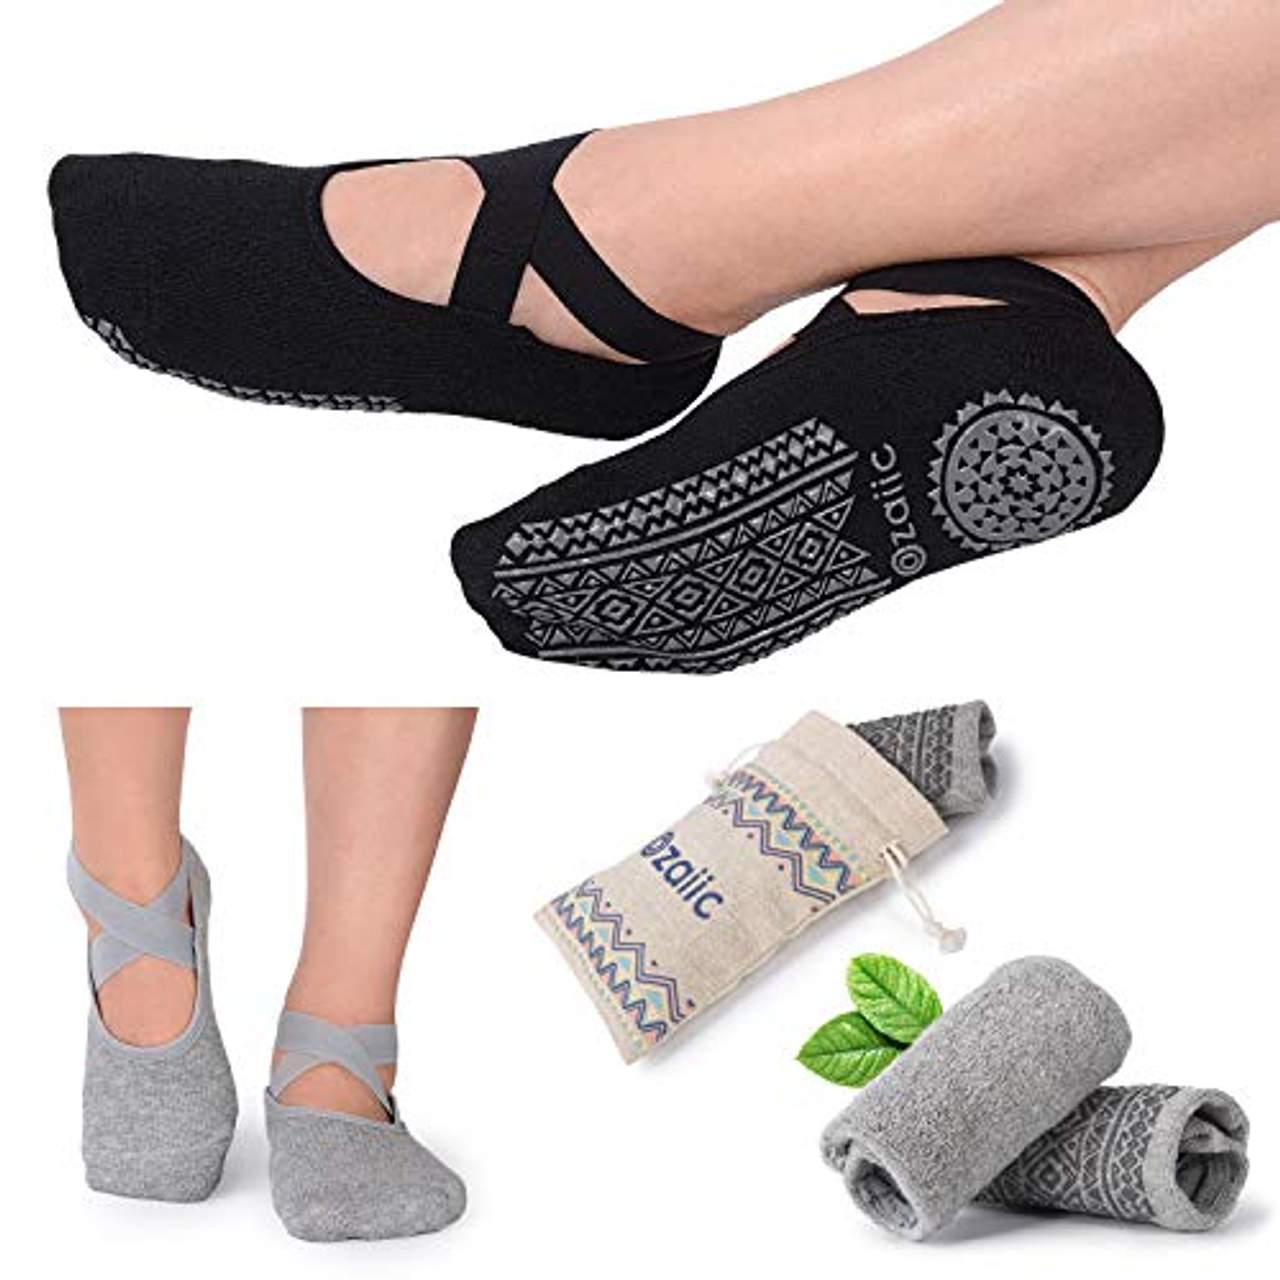 Ozaiic Yoga Socken für Damen rutschfeste